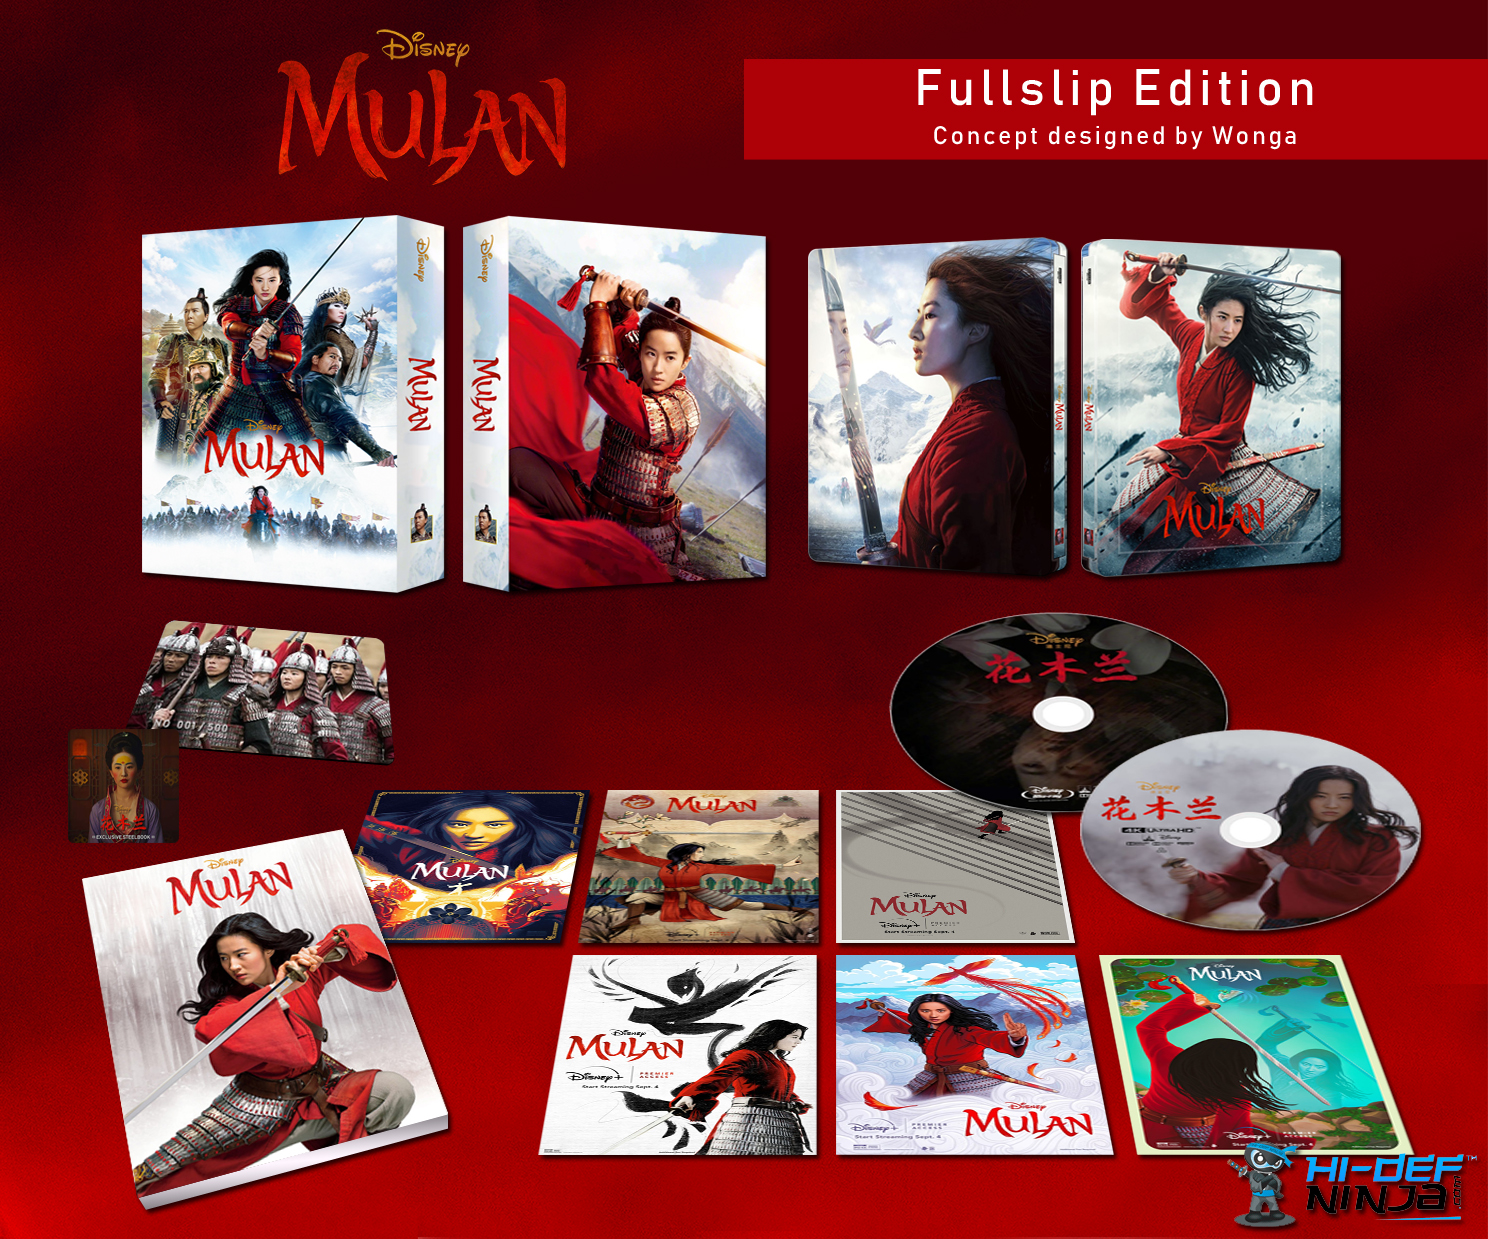 Mulan Fullslip Edition.jpg